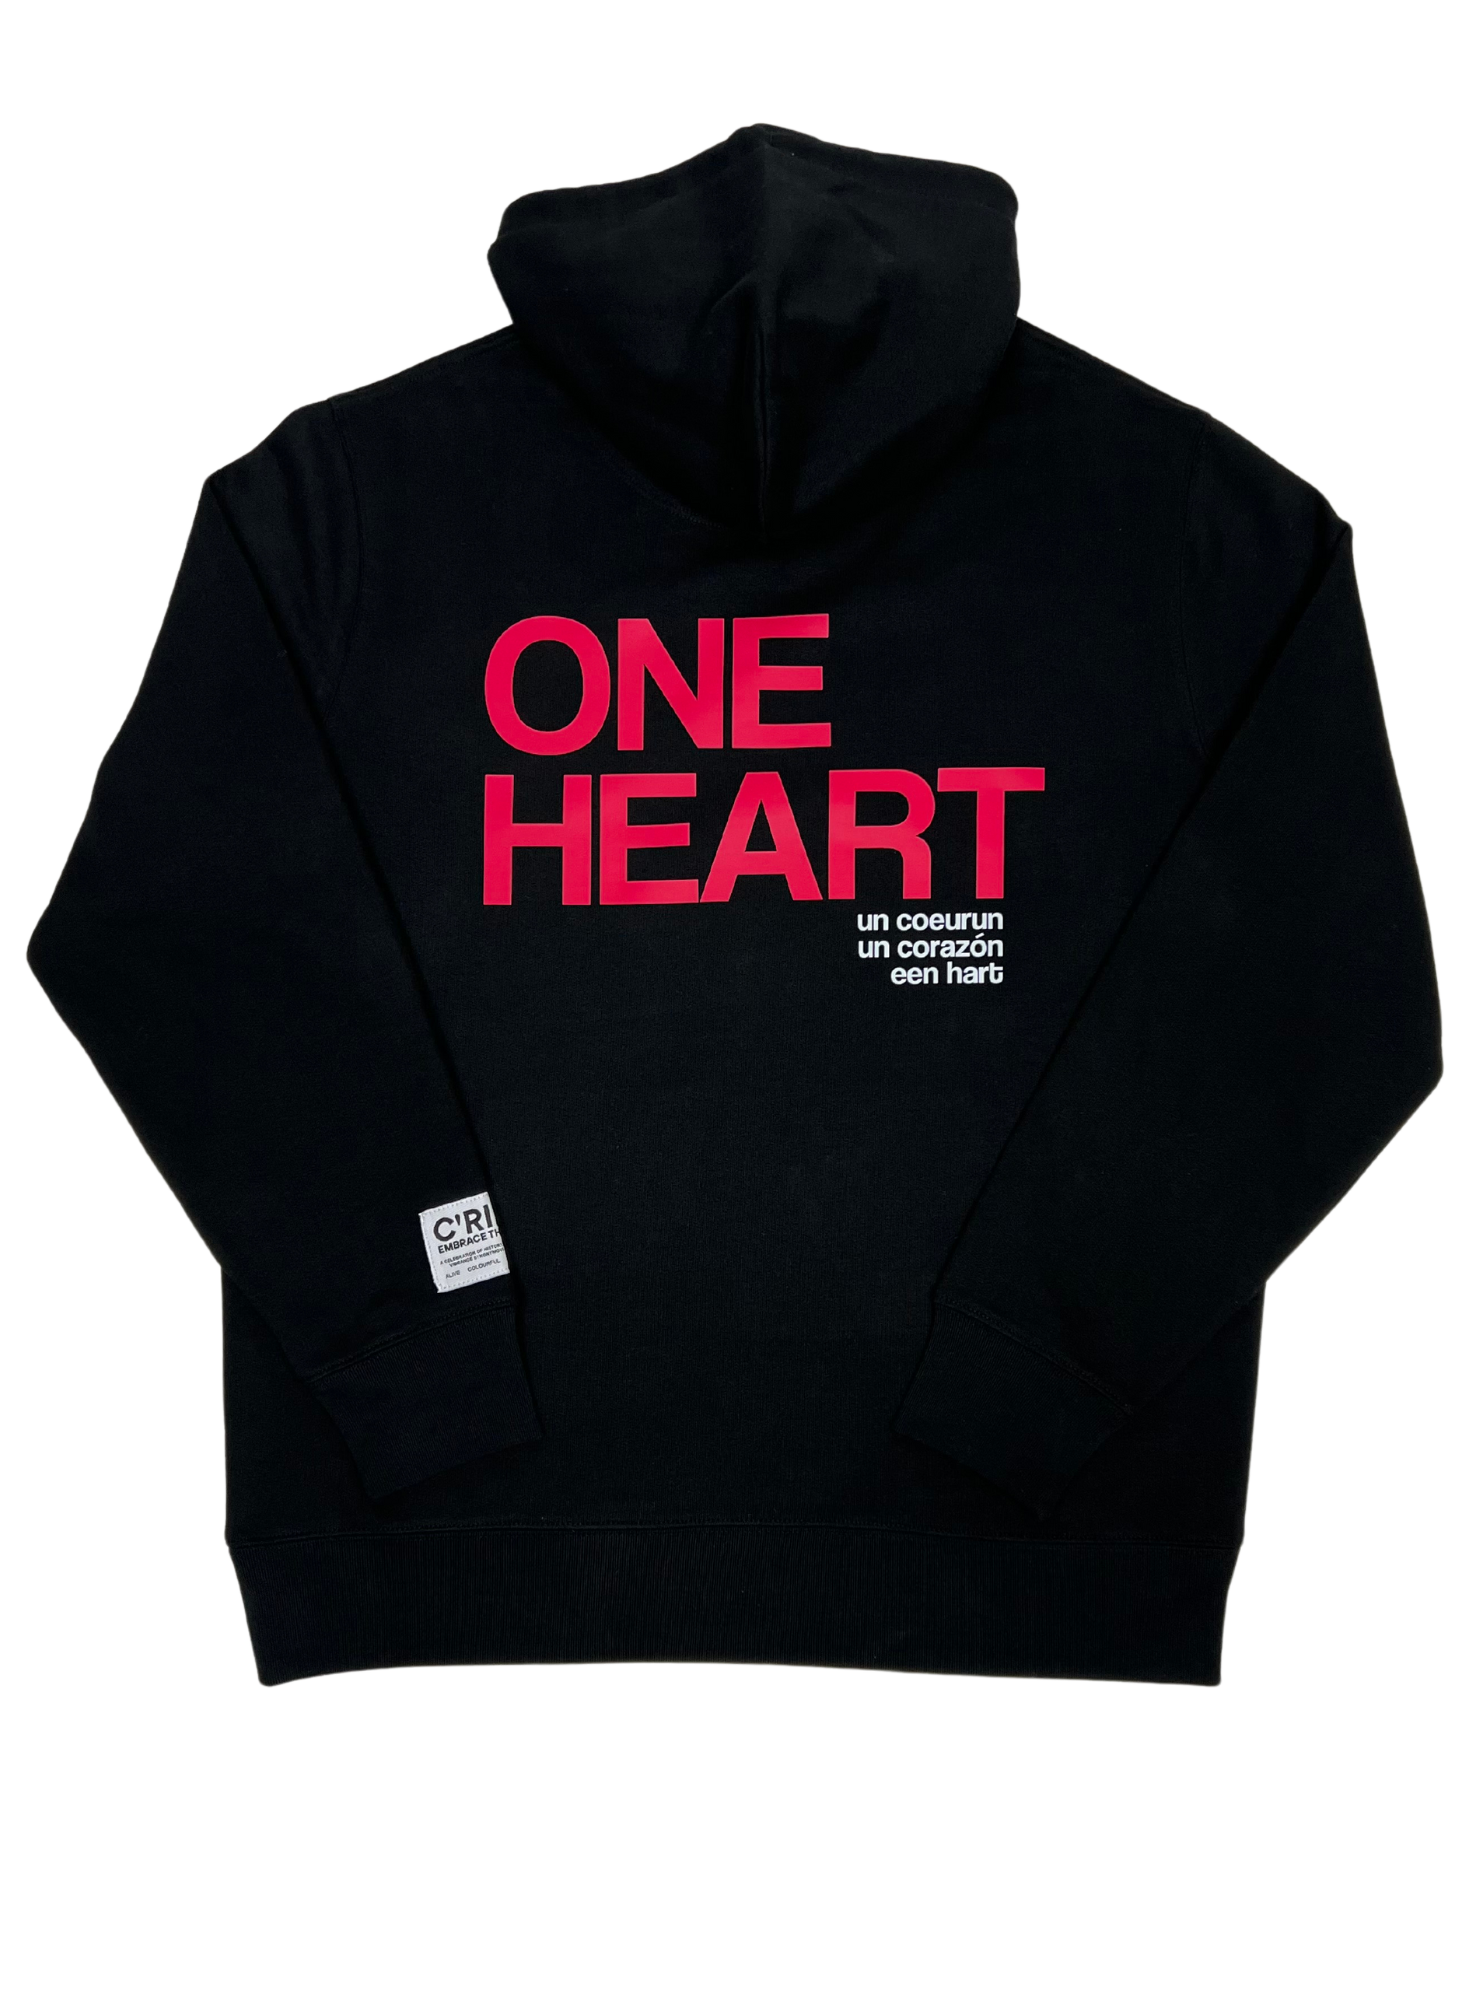 ONE LOVE ONE HEART Sweatshirt Hoodie, Black